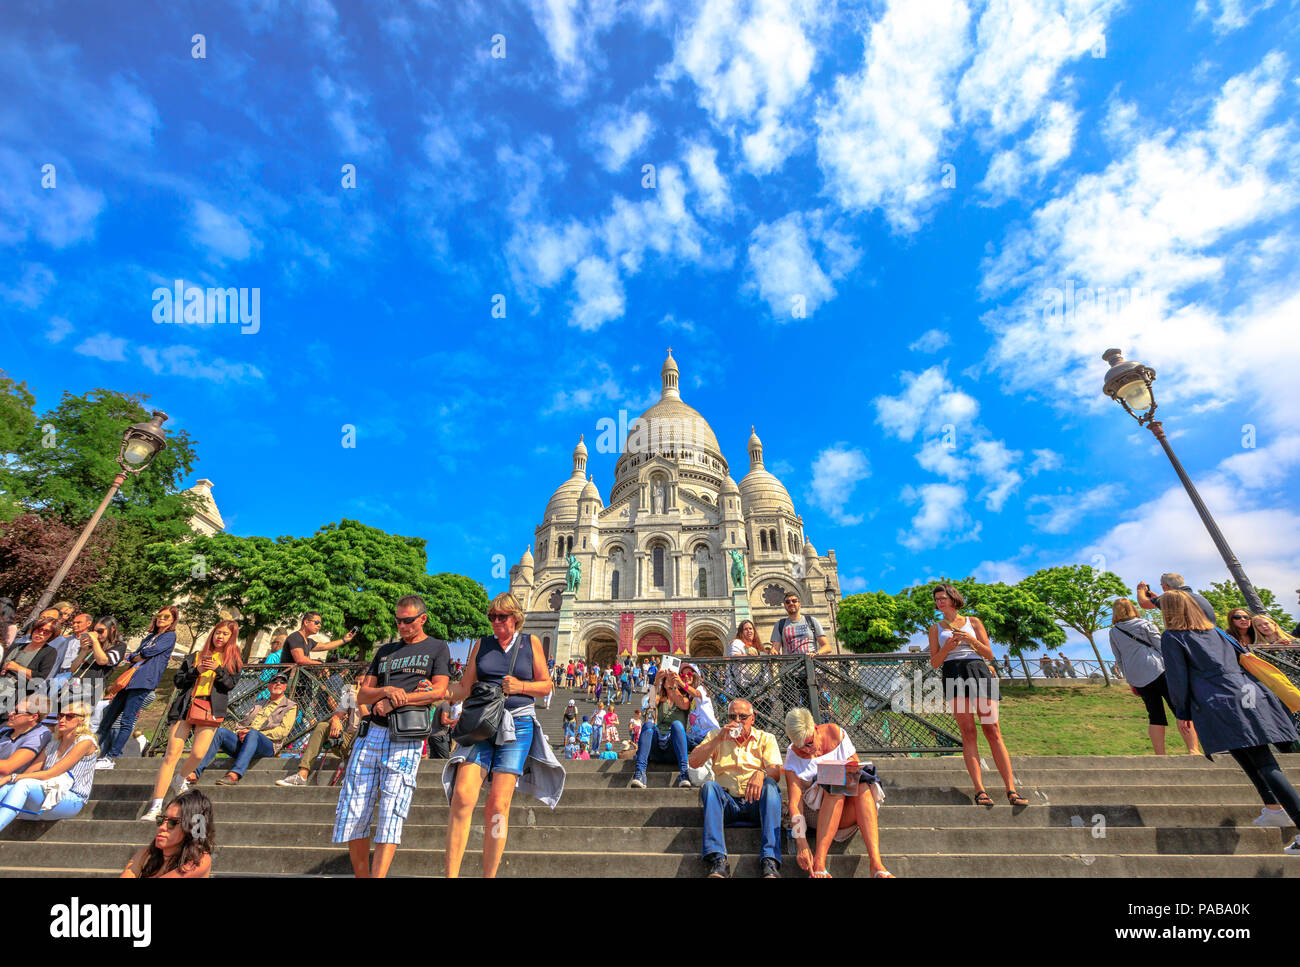 Paris, Frankreich, 3. Juli 2017: Viele Leute auf der Treppe der Basilika Sacré Coeur de Montmartre in Paris an einem sonnigen Tag mit blauen Himmel. Herz-jesu-Kirche ist eine beliebte touristische Sehenswürdigkeit. Ansicht von unten. Stockfoto